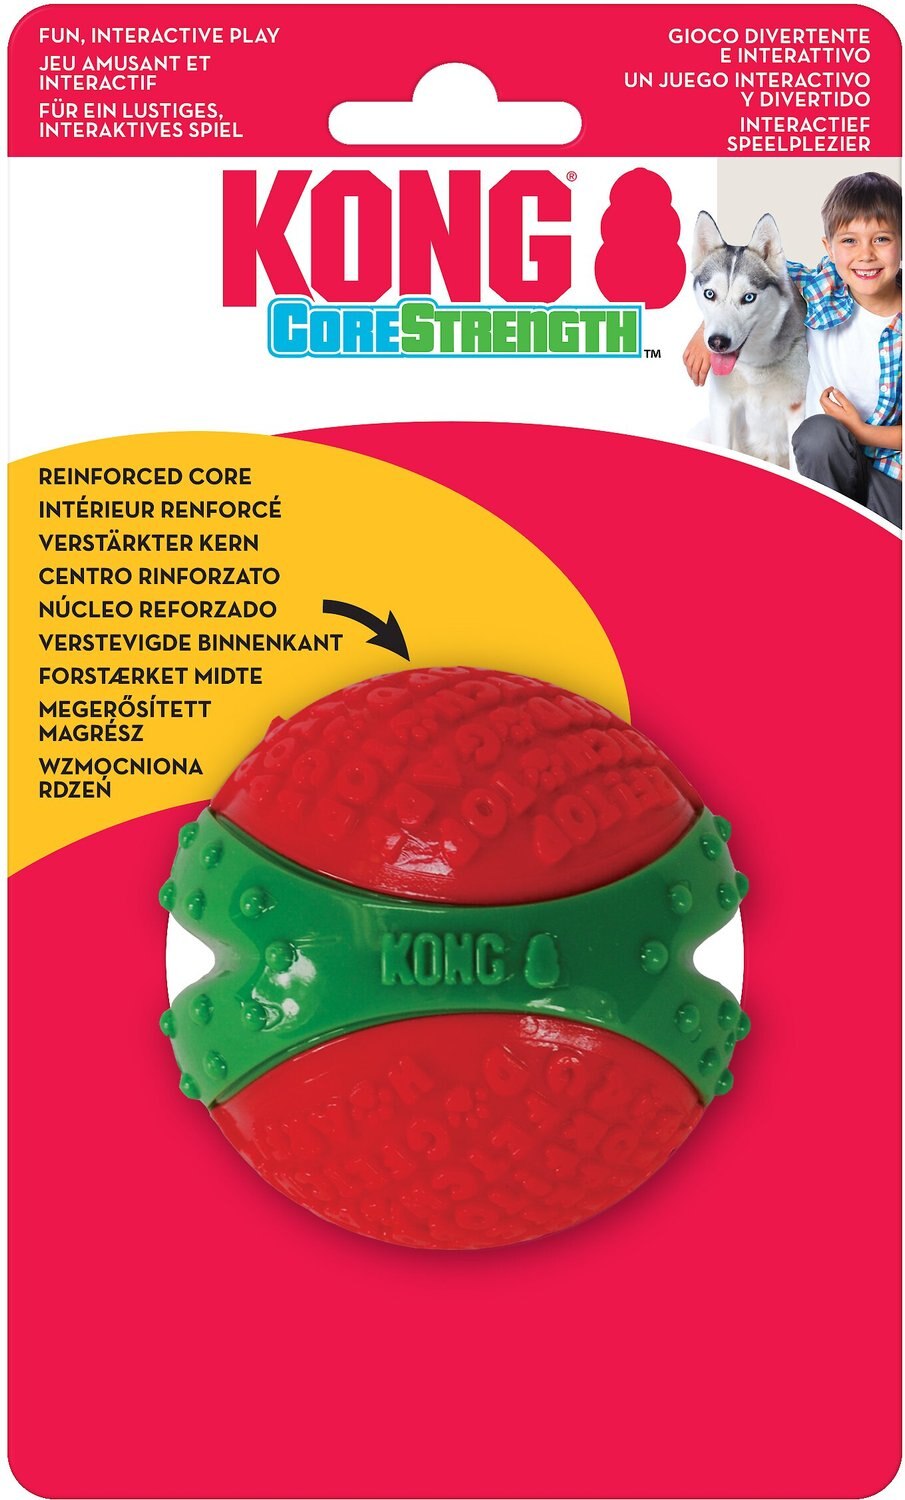 kong core strength ball